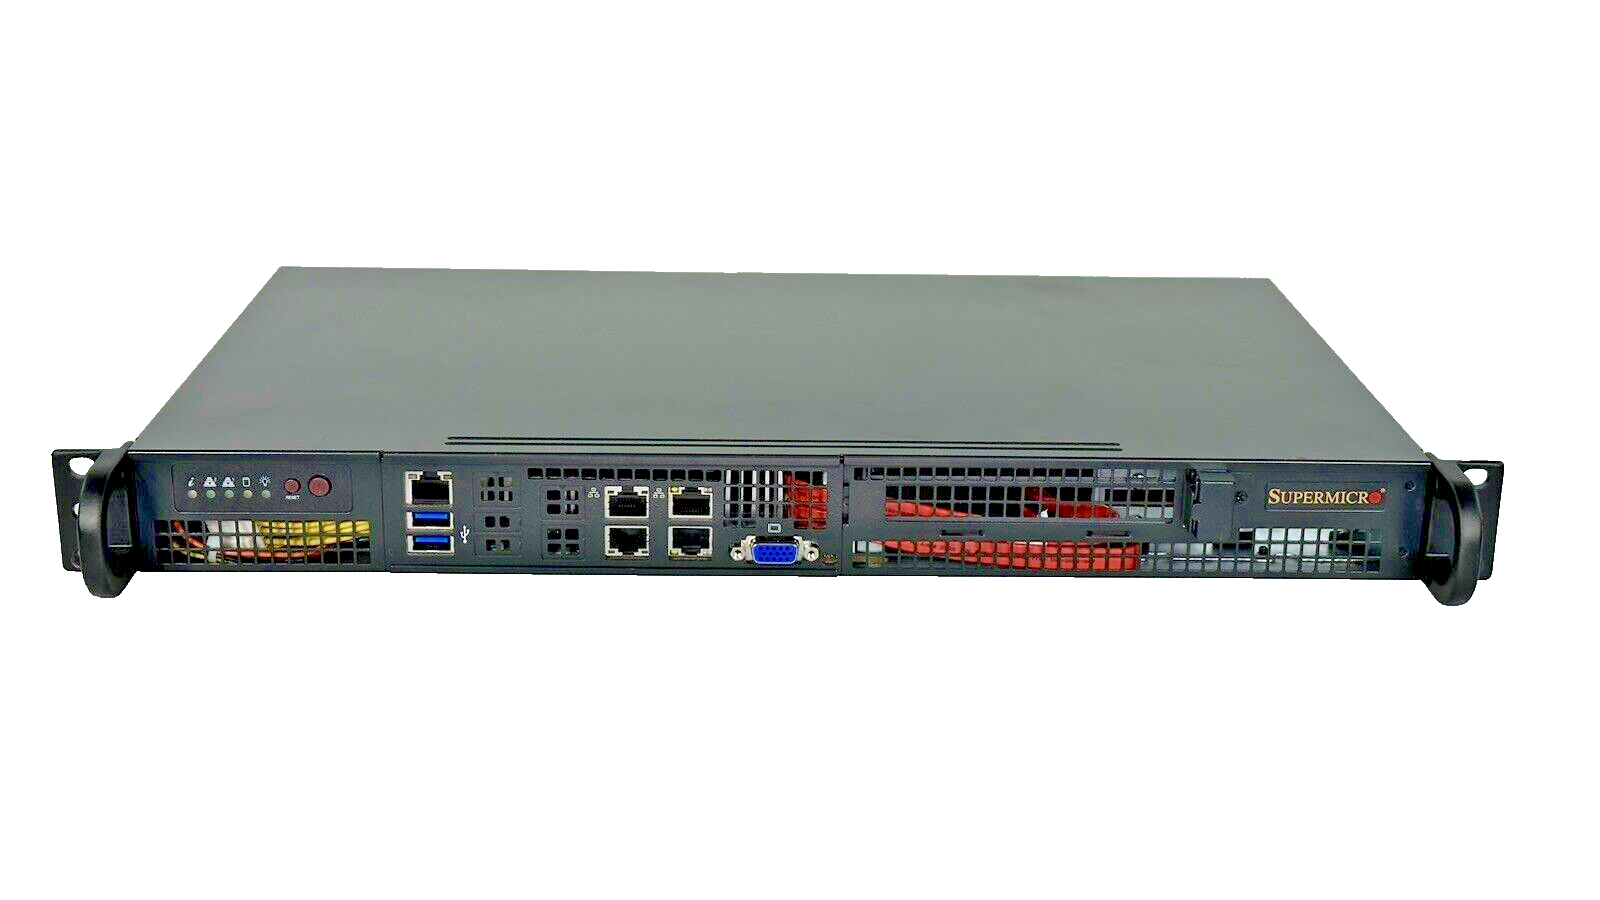 Router Firewall Server Xeon-D 1540 64GB DDR4 ECC RAM 4x 1TB SSD 1x 480GB M.2 SSD